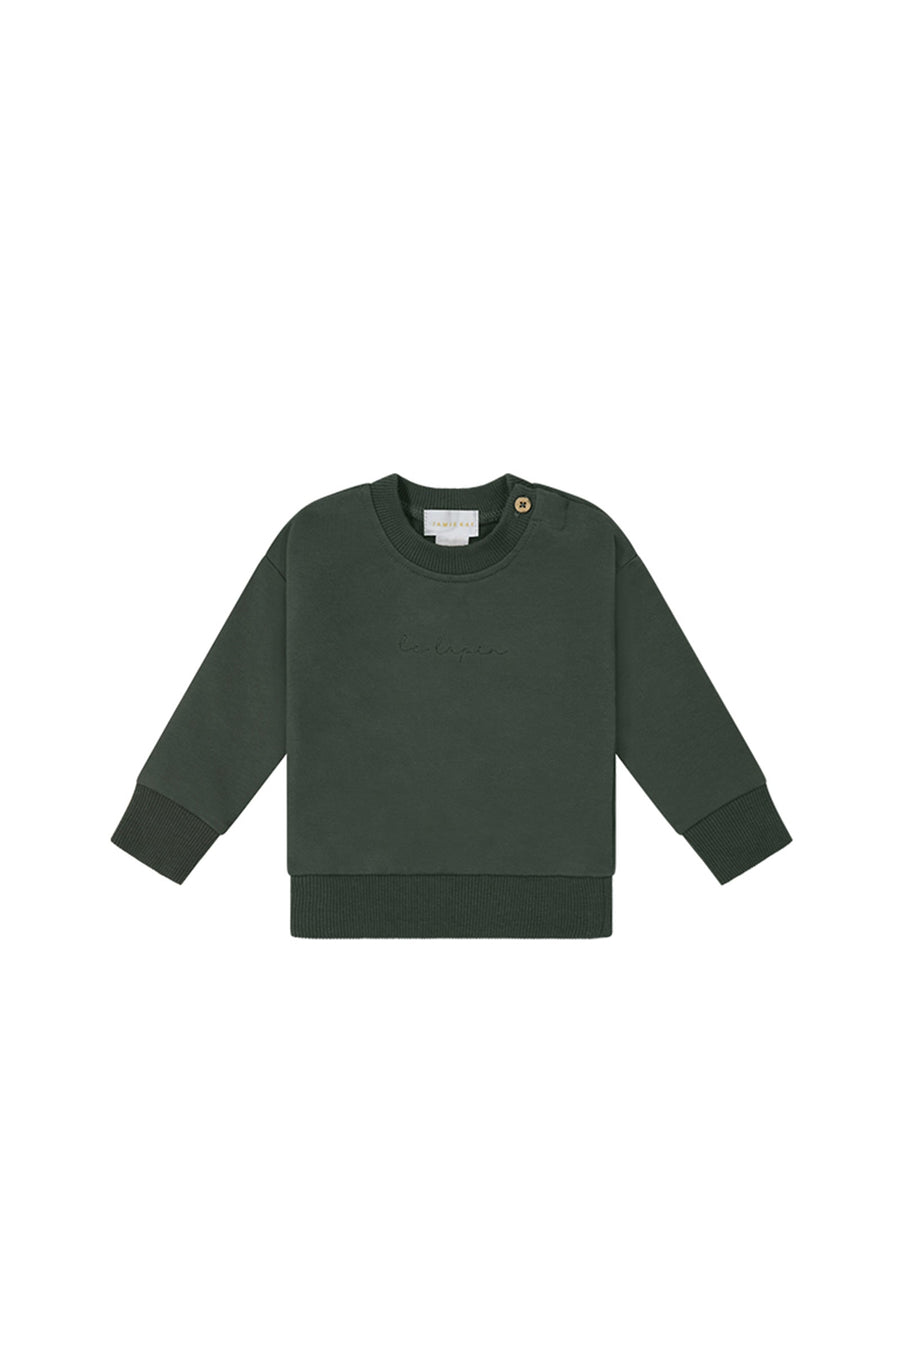 Organic Cotton Kit Sweatshirt - Seaweed